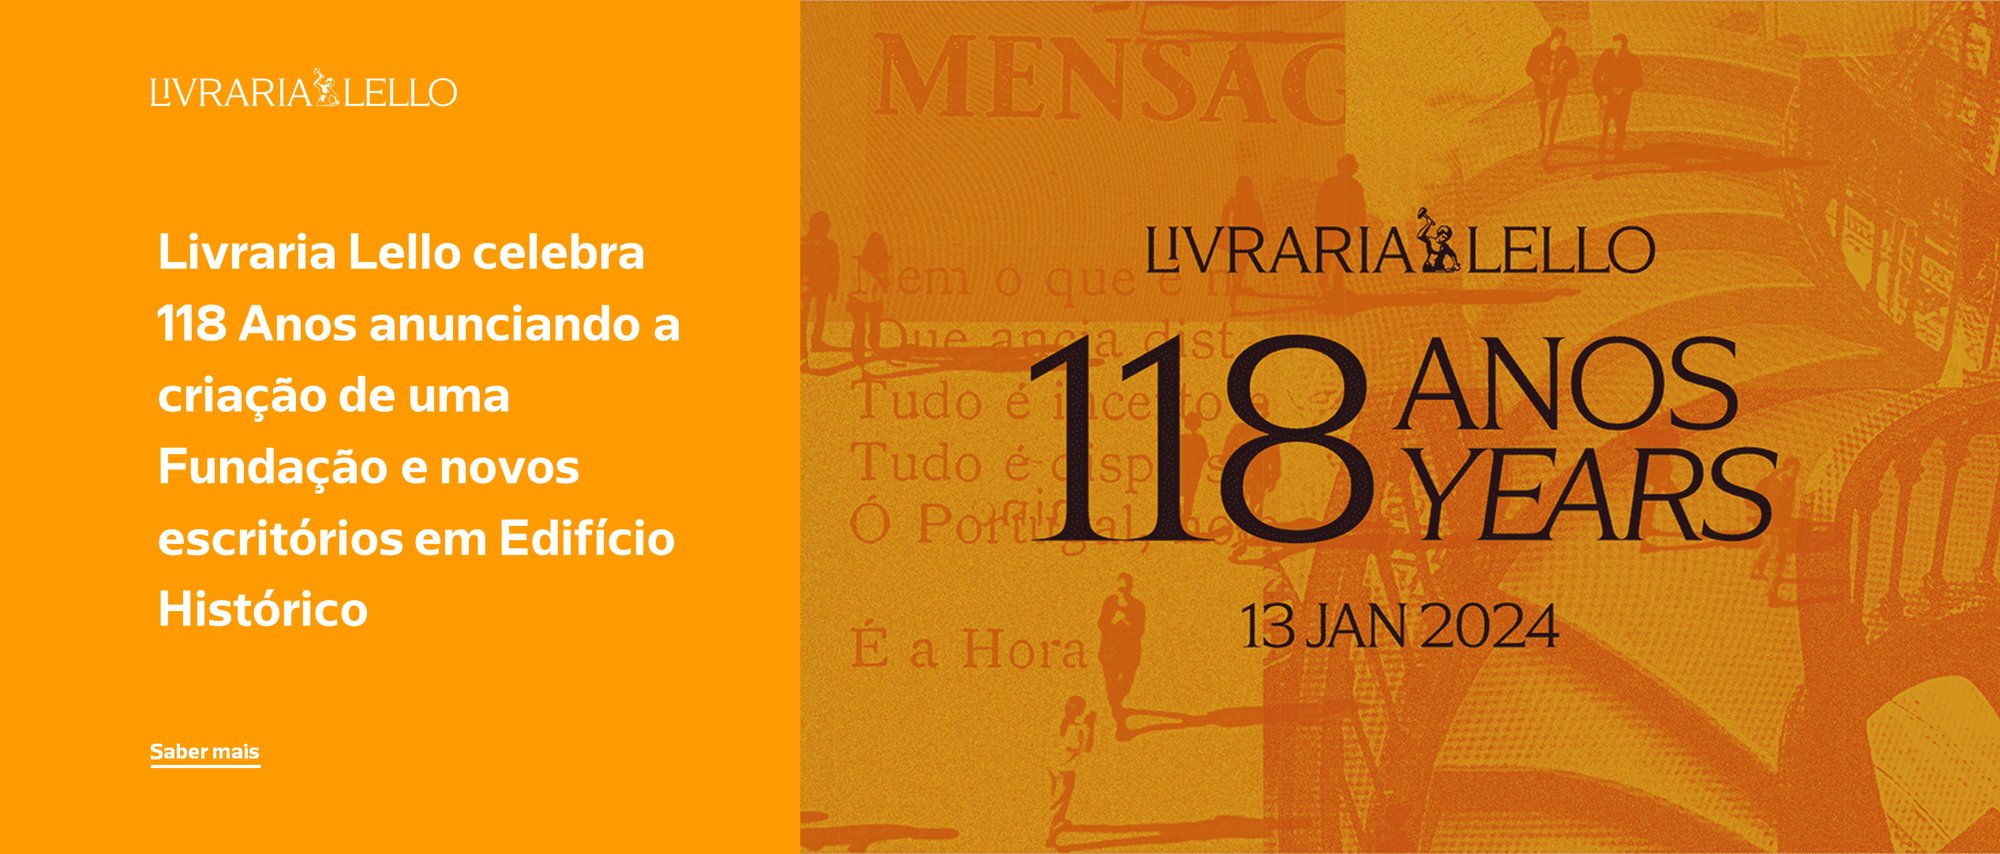 Livraria Lello celebra 118 Anos anunciando a criação de uma Fundação e novos escritórios em Edifício Histórico